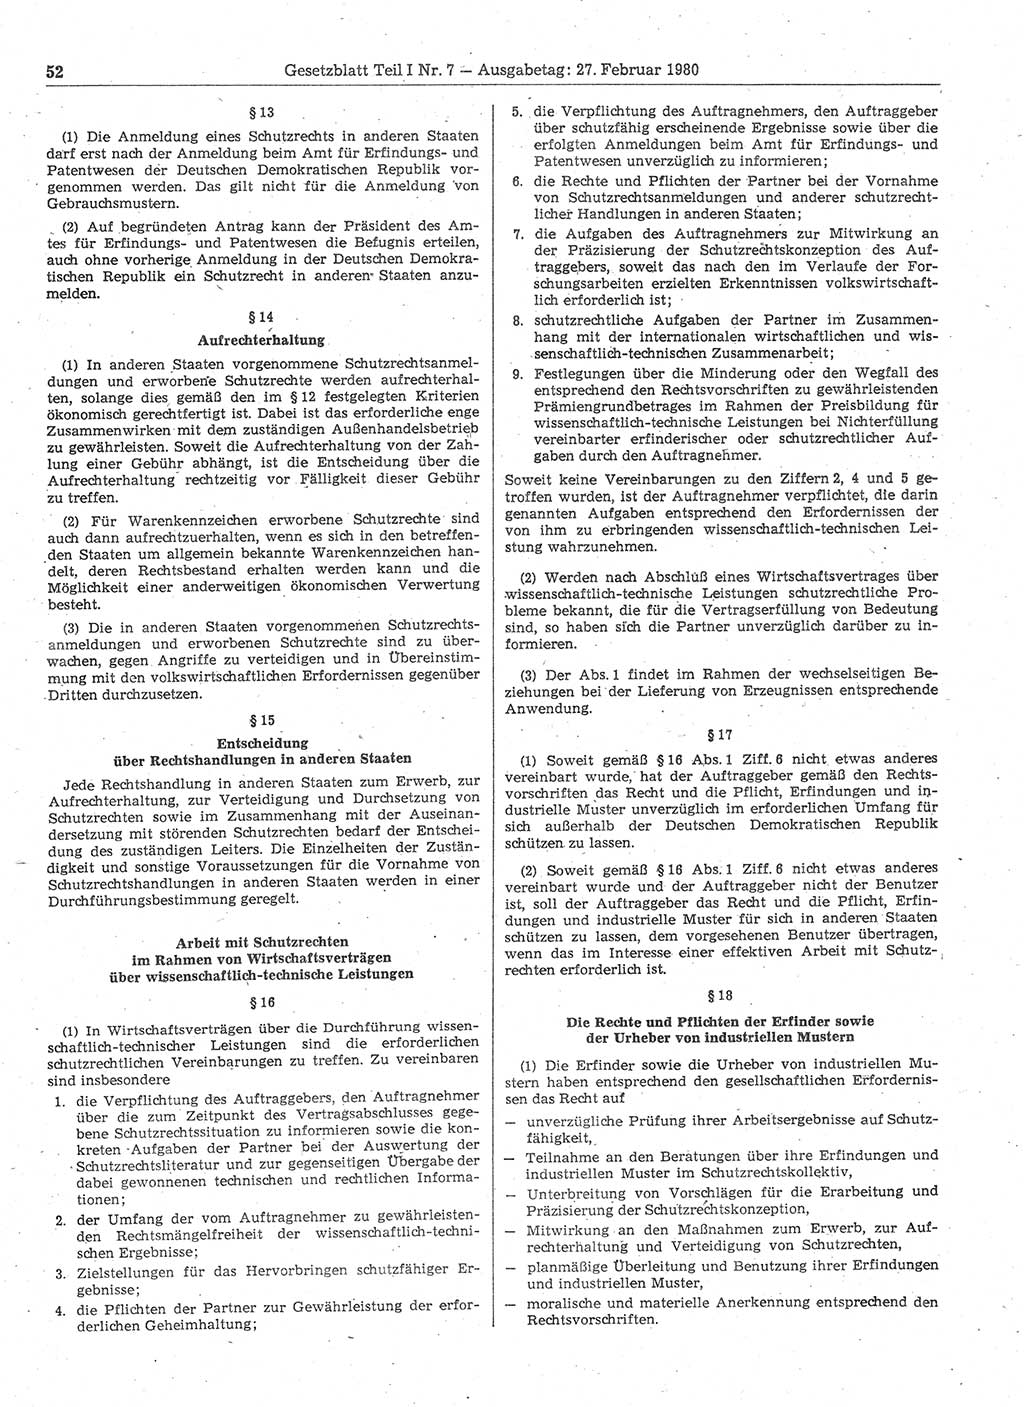 Gesetzblatt (GBl.) der Deutschen Demokratischen Republik (DDR) Teil Ⅰ 1980, Seite 52 (GBl. DDR Ⅰ 1980, S. 52)